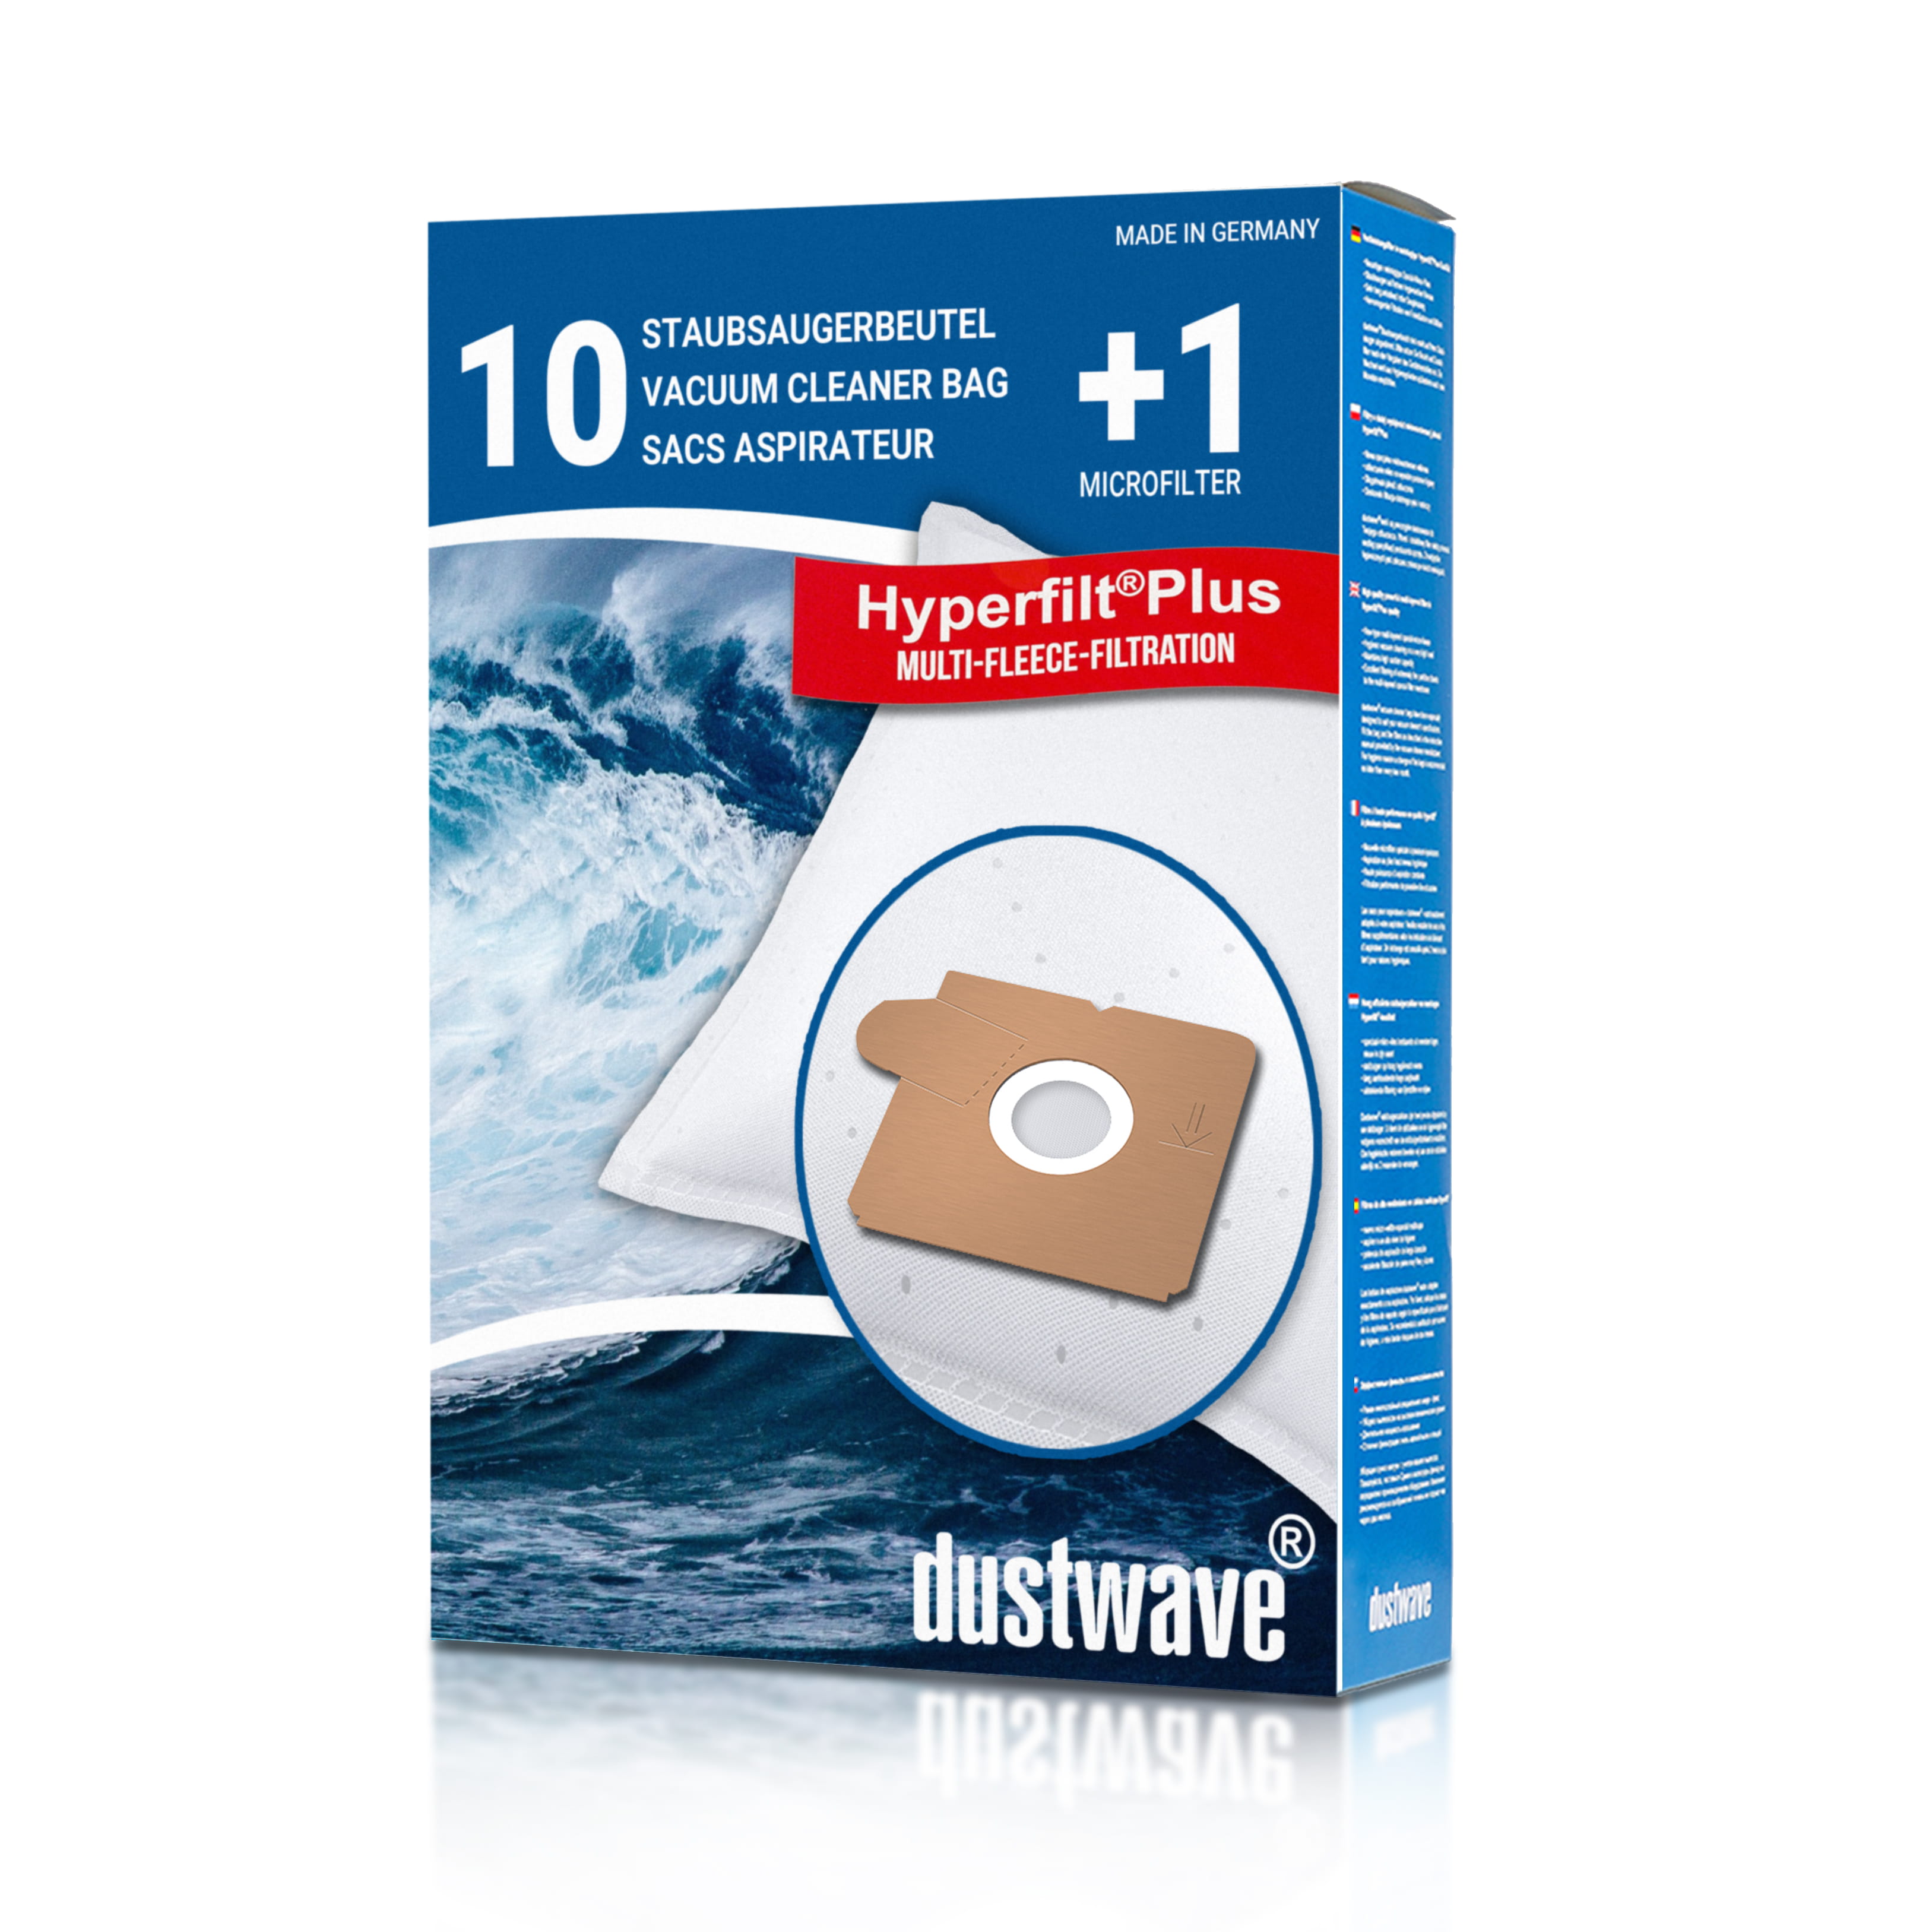 Dustwave® 10 Staubsaugerbeutel für AEG Vampyrino CE Mega 1 - hocheffizient mit Hygieneverschluss - Made in Germany